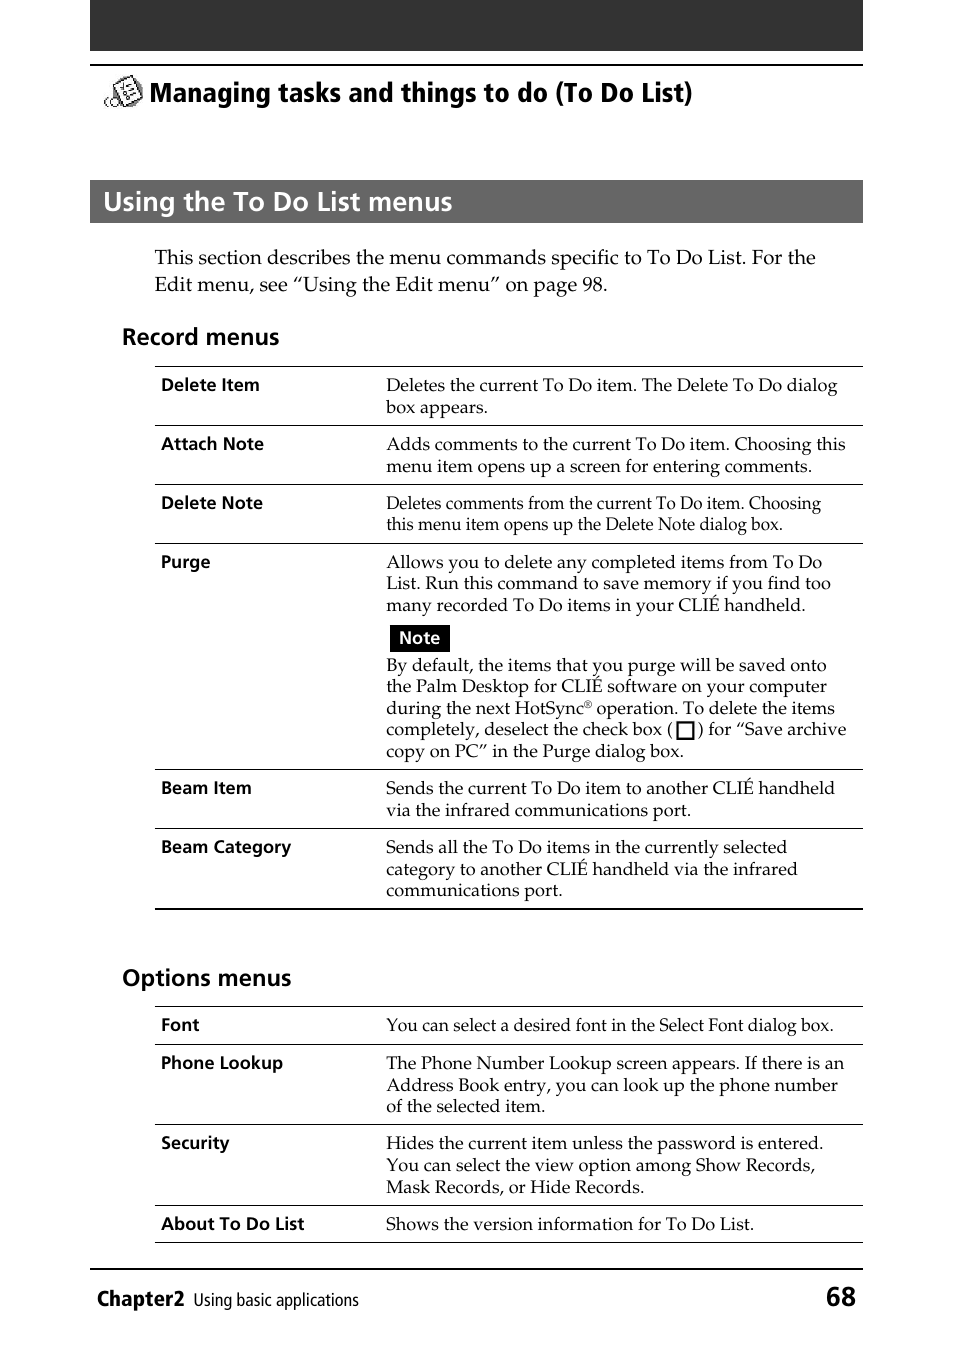 Using the to do list menus, Record menus, Options menus | Sony PEG-T415G User Manual | Page 68 / 220